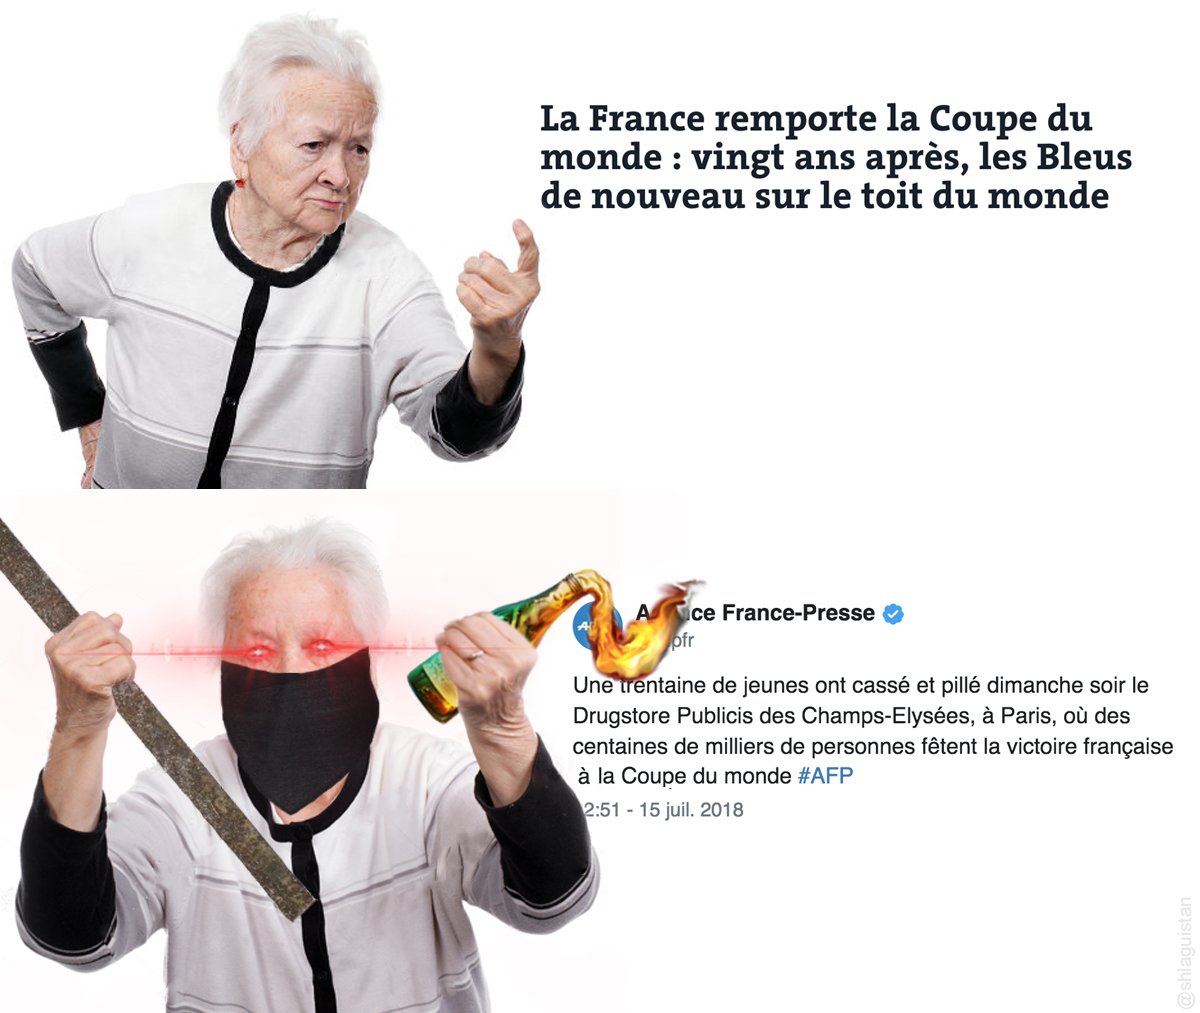 #CoupeDuMonde #CoupeDuMonde2018 #FranceCroatie #ChampsElysees